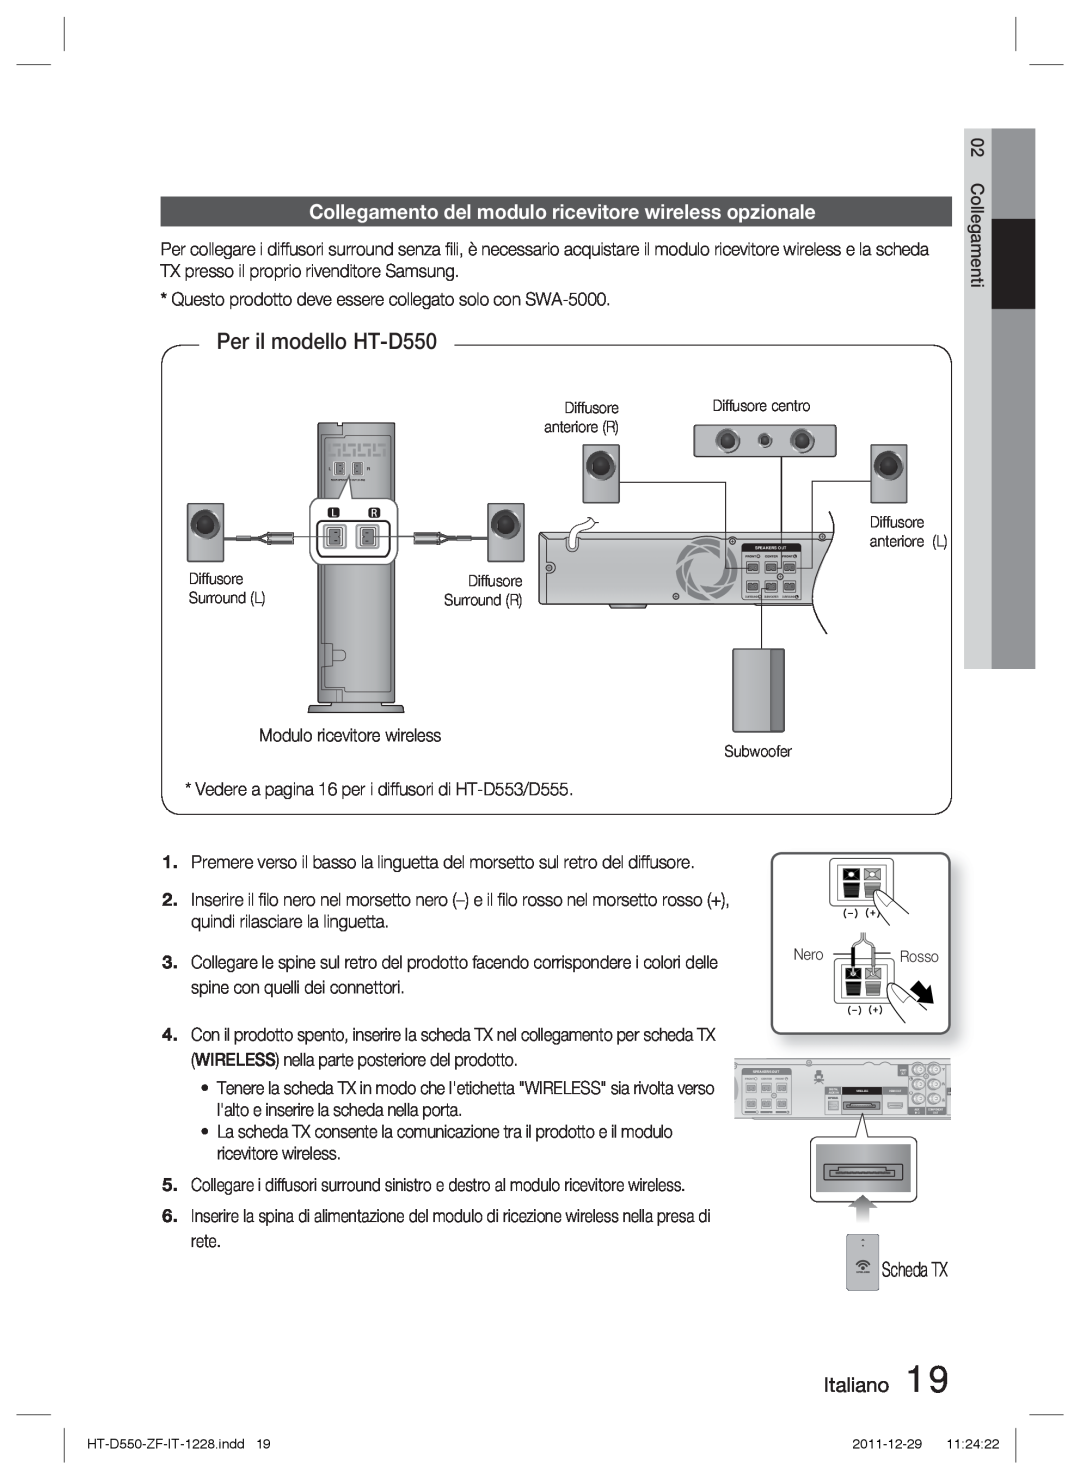 Samsung HT-D550/ZF manual Collegamento del modulo ricevitore wireless opzionale, Scheda TX Italiano, Per il modello HT-D550 